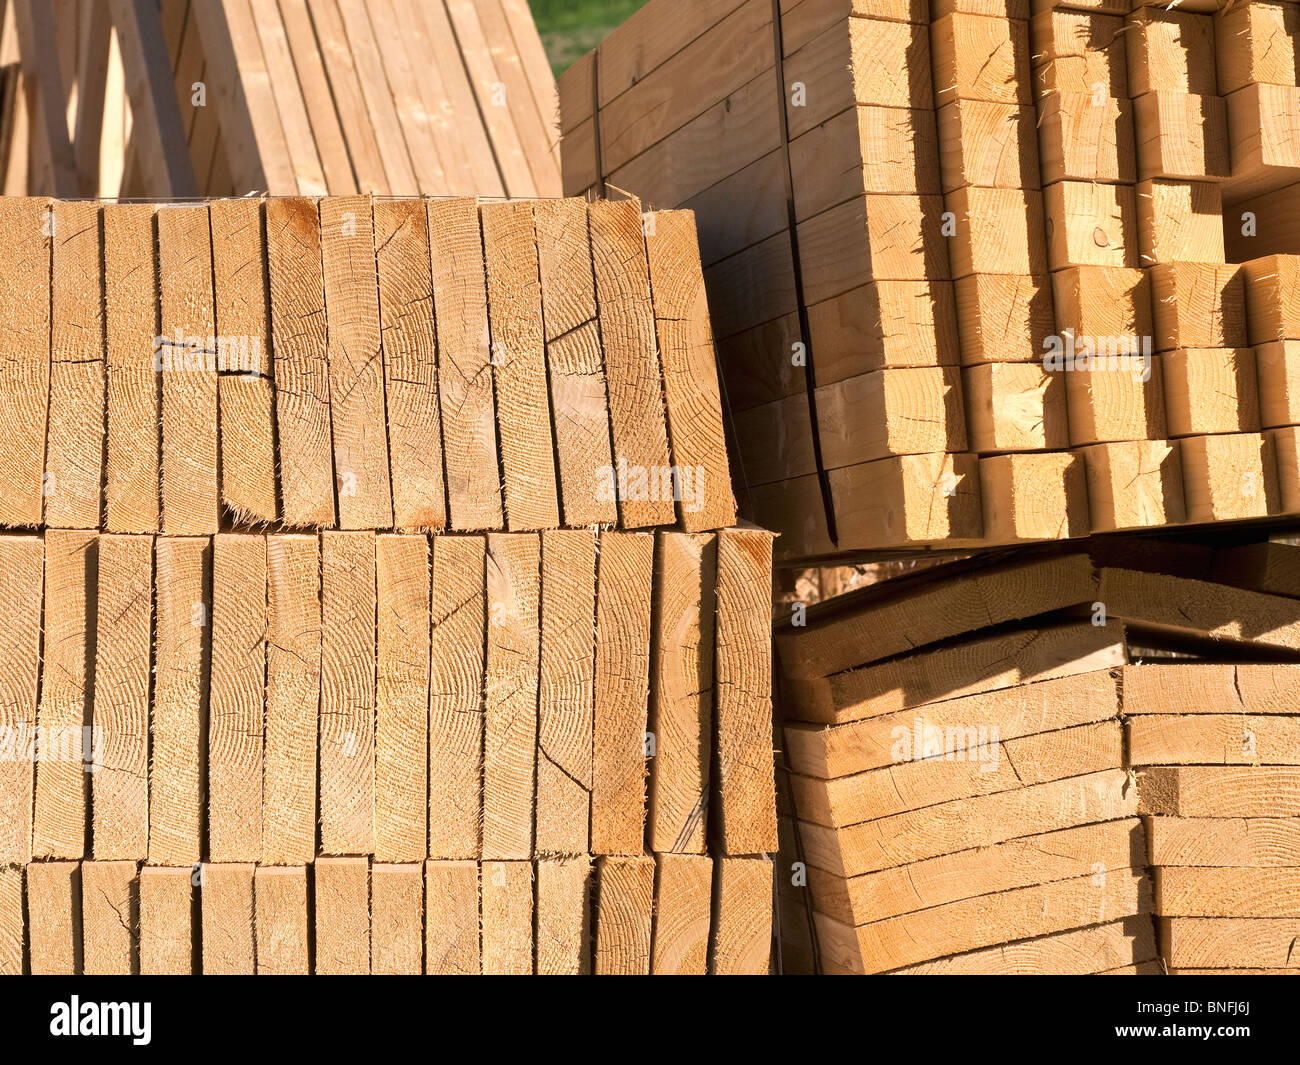 Les planches en bois et de clous pour la construction de logements nouveaux - Indre-et-Loire, France. Banque D'Images